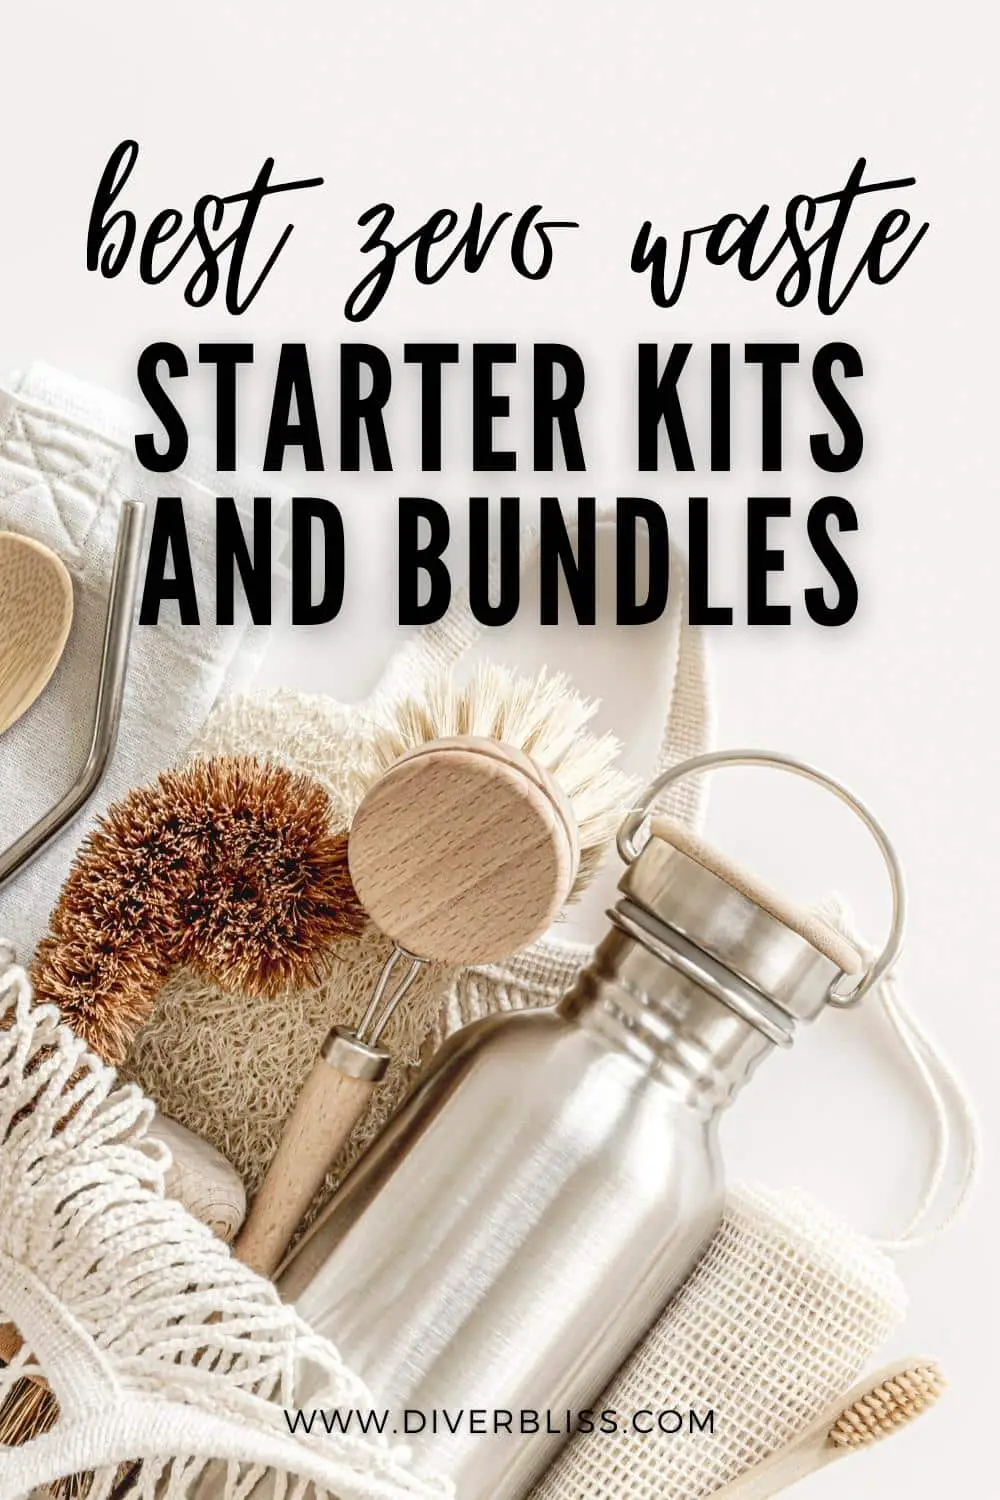 best zero waste starter kits and bundles